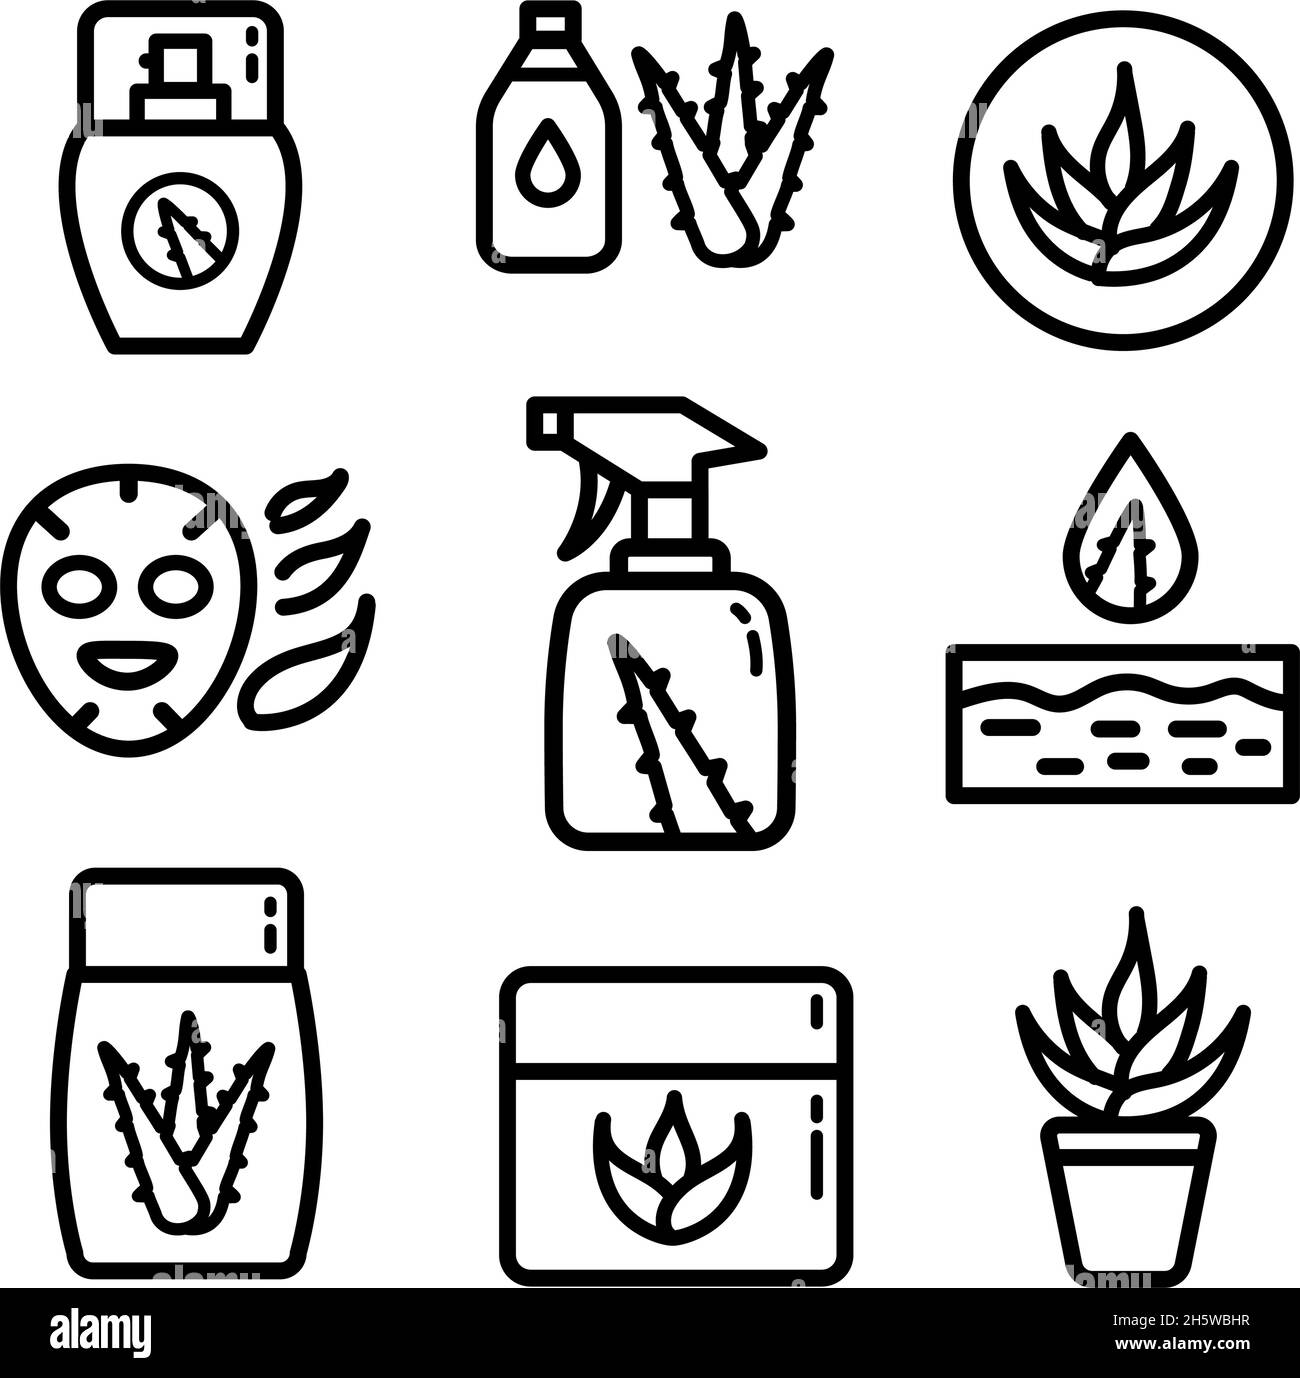 Ensemble d'icônes de contour d'aloe vera.Succulent, illustrations vectorielles de plantes tropicales, signes minces pour les aliments biologiques, cosmétiques.Isolaté sur fond blanc. Illustration de Vecteur